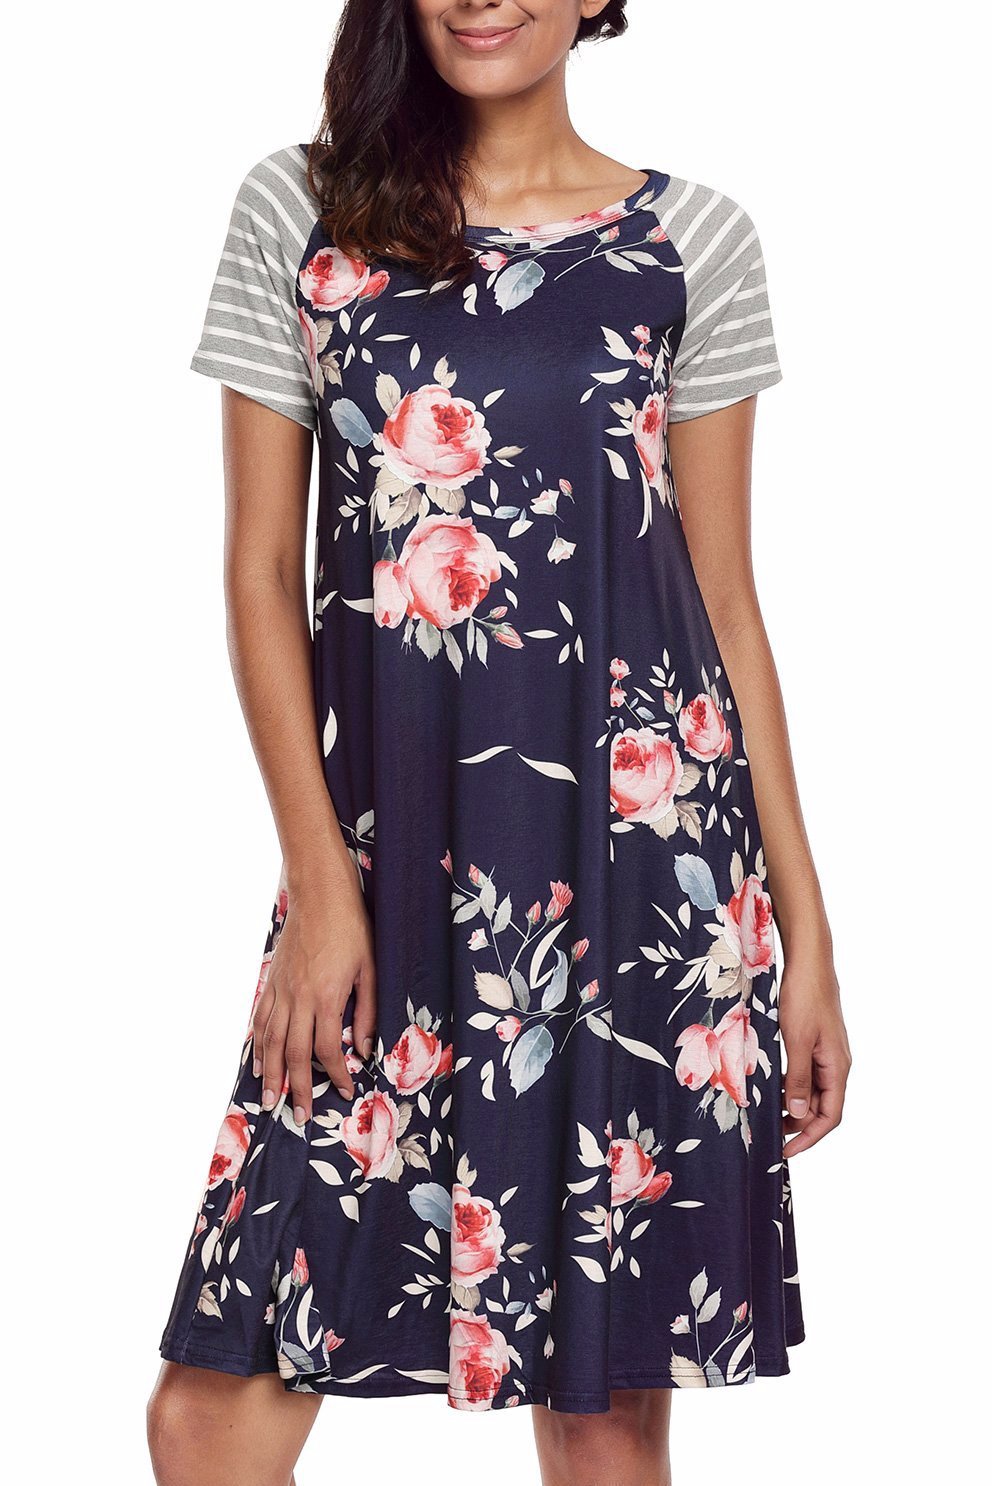 Navy Blue Floral Print A-line Knit T-shirt Dress – Lady Laila Boutique